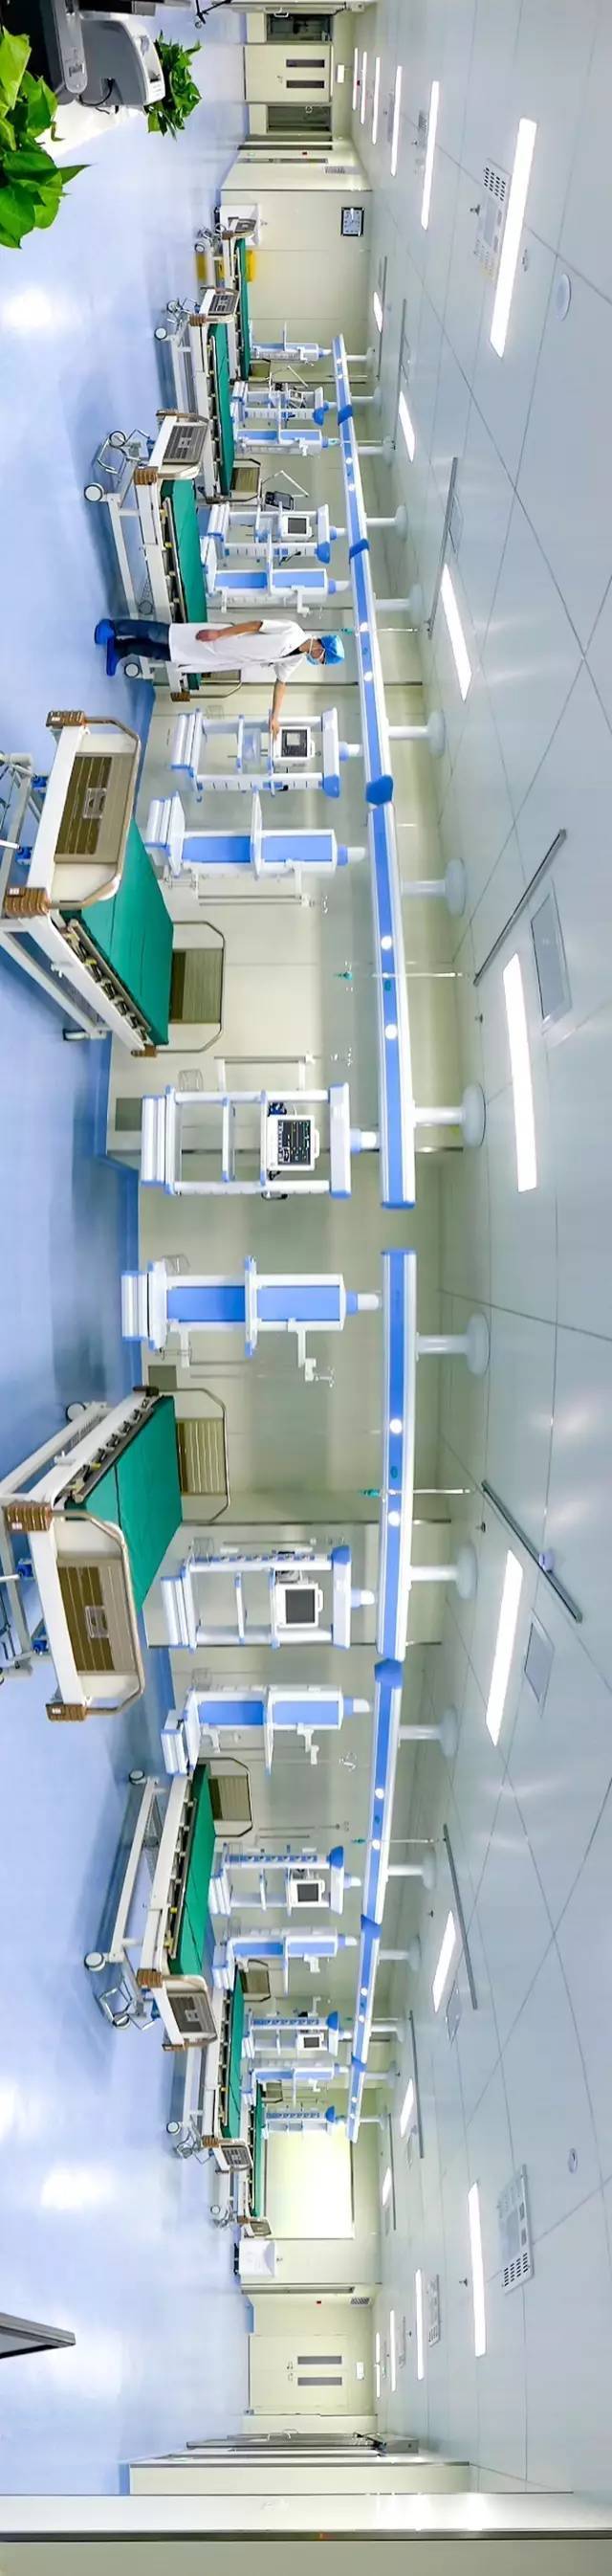 设施更先进,齐全的重症监护室(icu) 急诊大厅全景